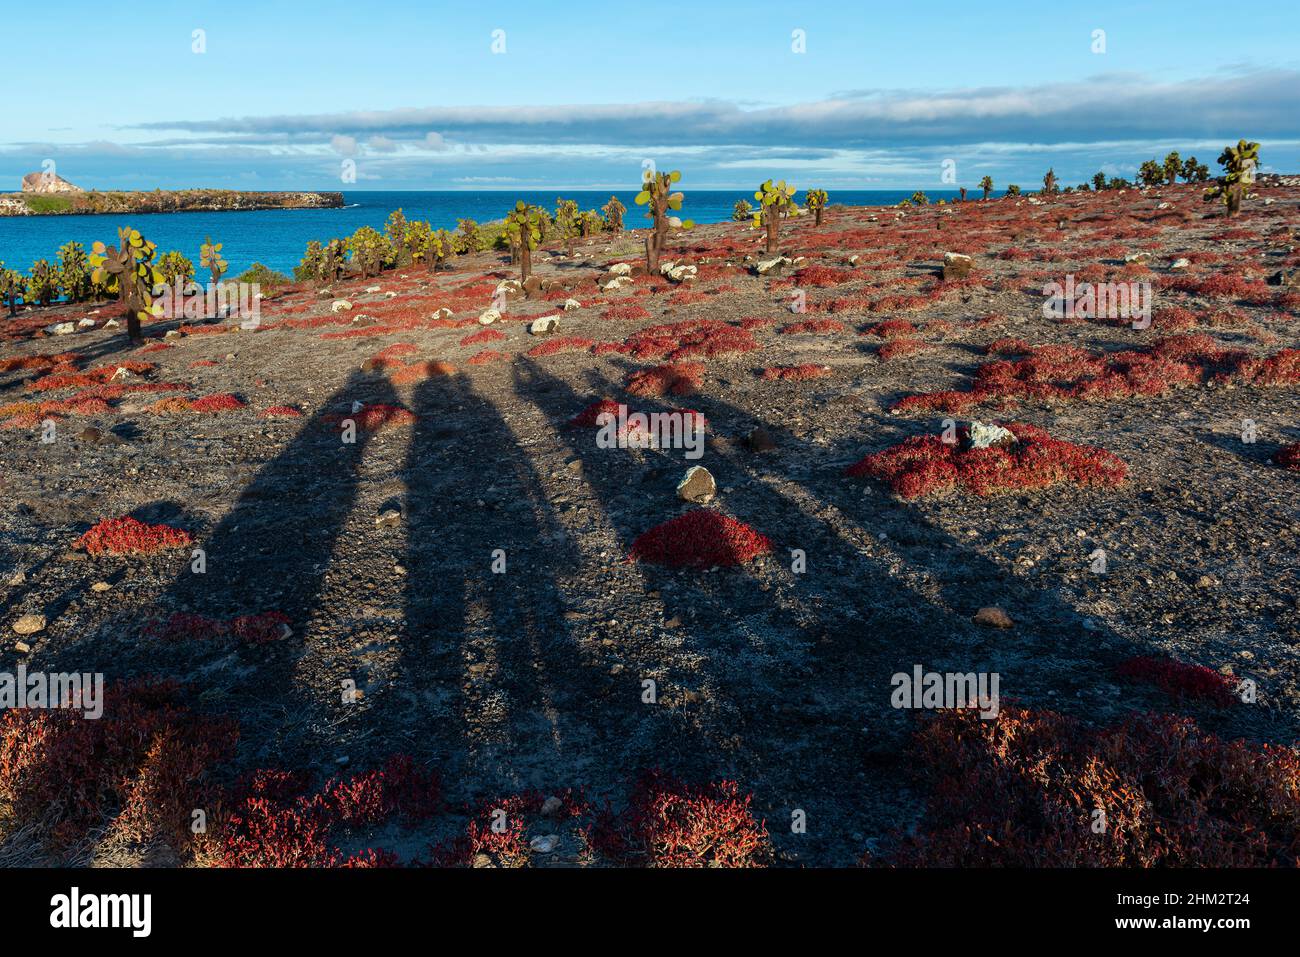 Ombre turistiche sul paesaggio dell'isola di Galapagos South Plaza al tramonto con cactus di pero prickly e pianta di sesuvio rosso, parco nazionale Galapagos, Ecuador. Foto Stock